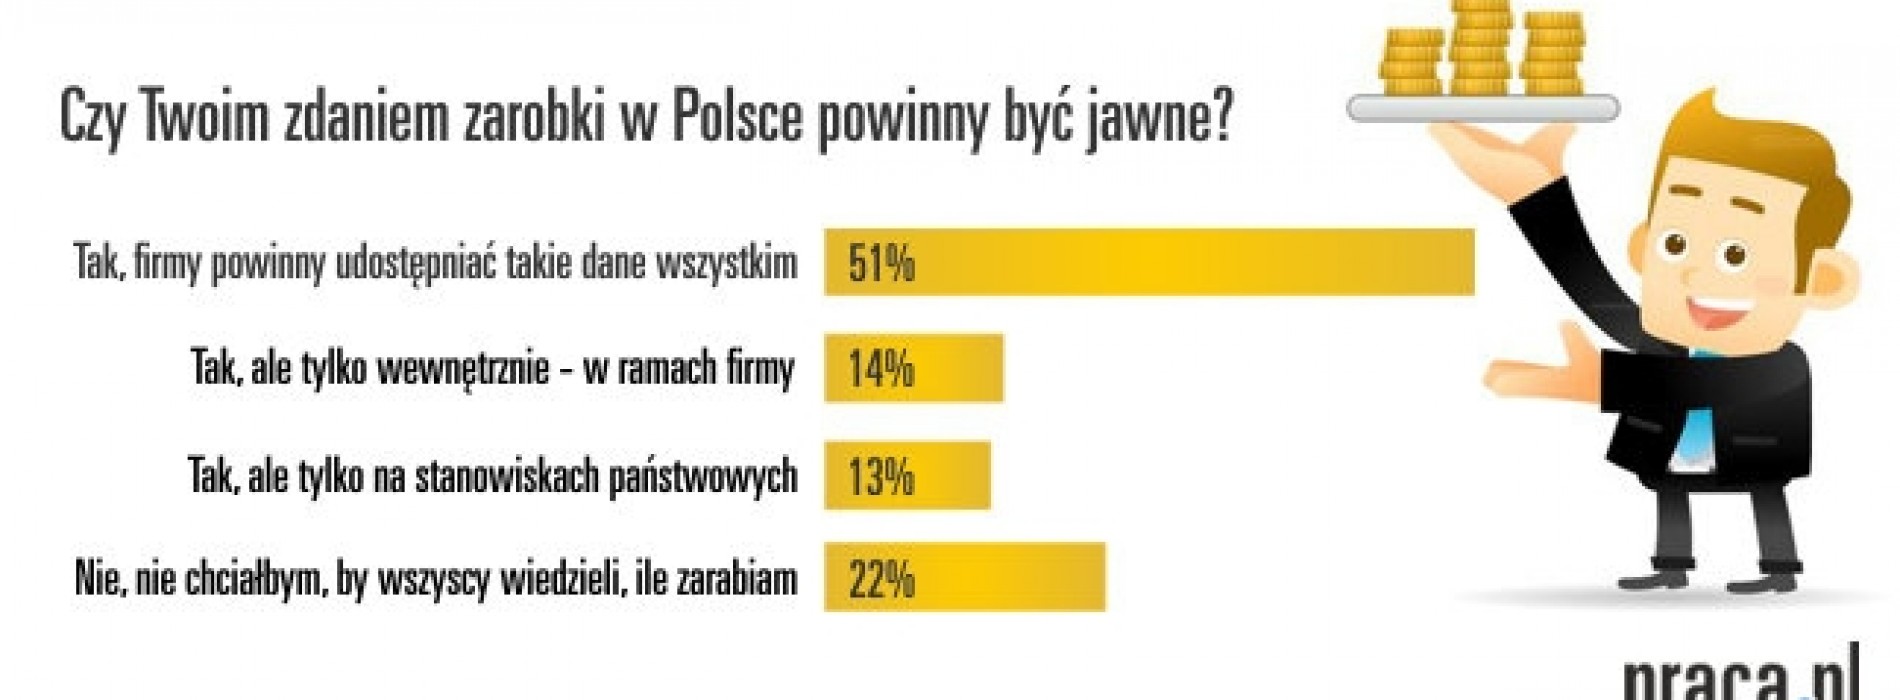 65% Polaków za tym, by zarobki były jawne